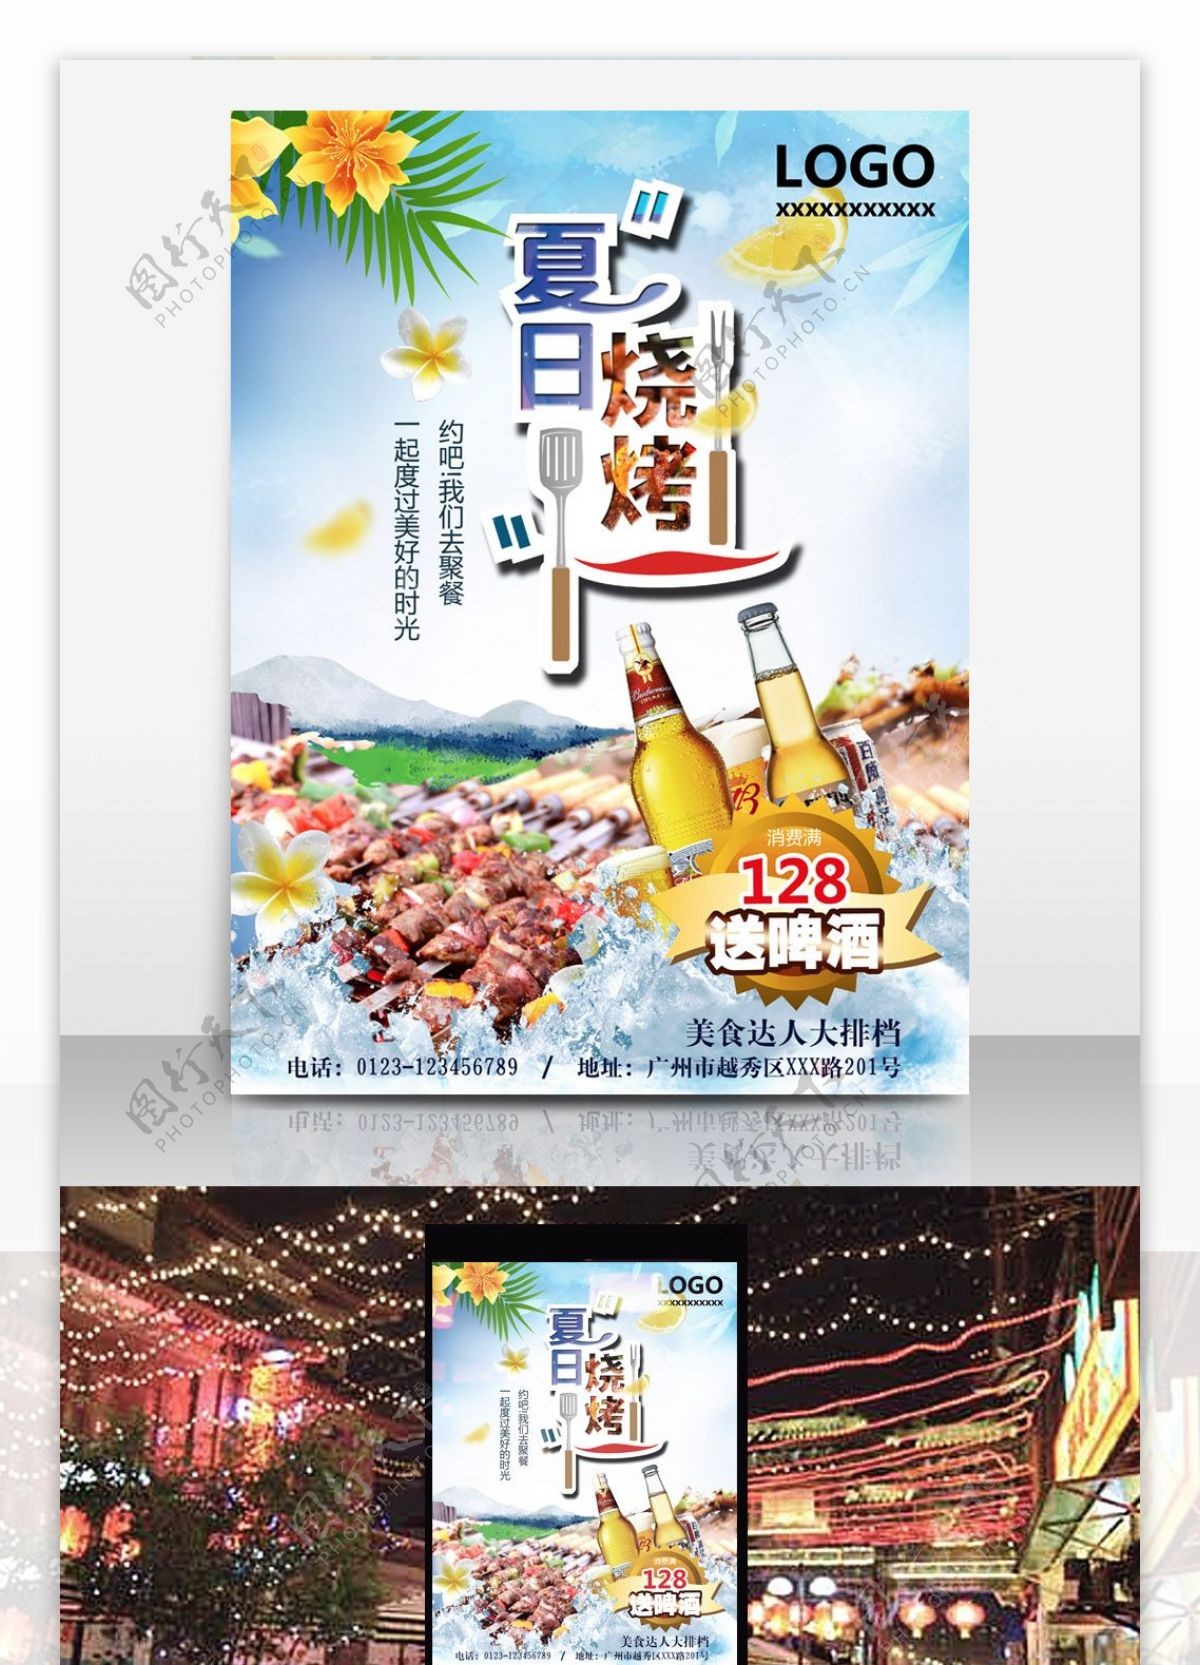 夏日烧烤配啤酒大排档宣传促销海报